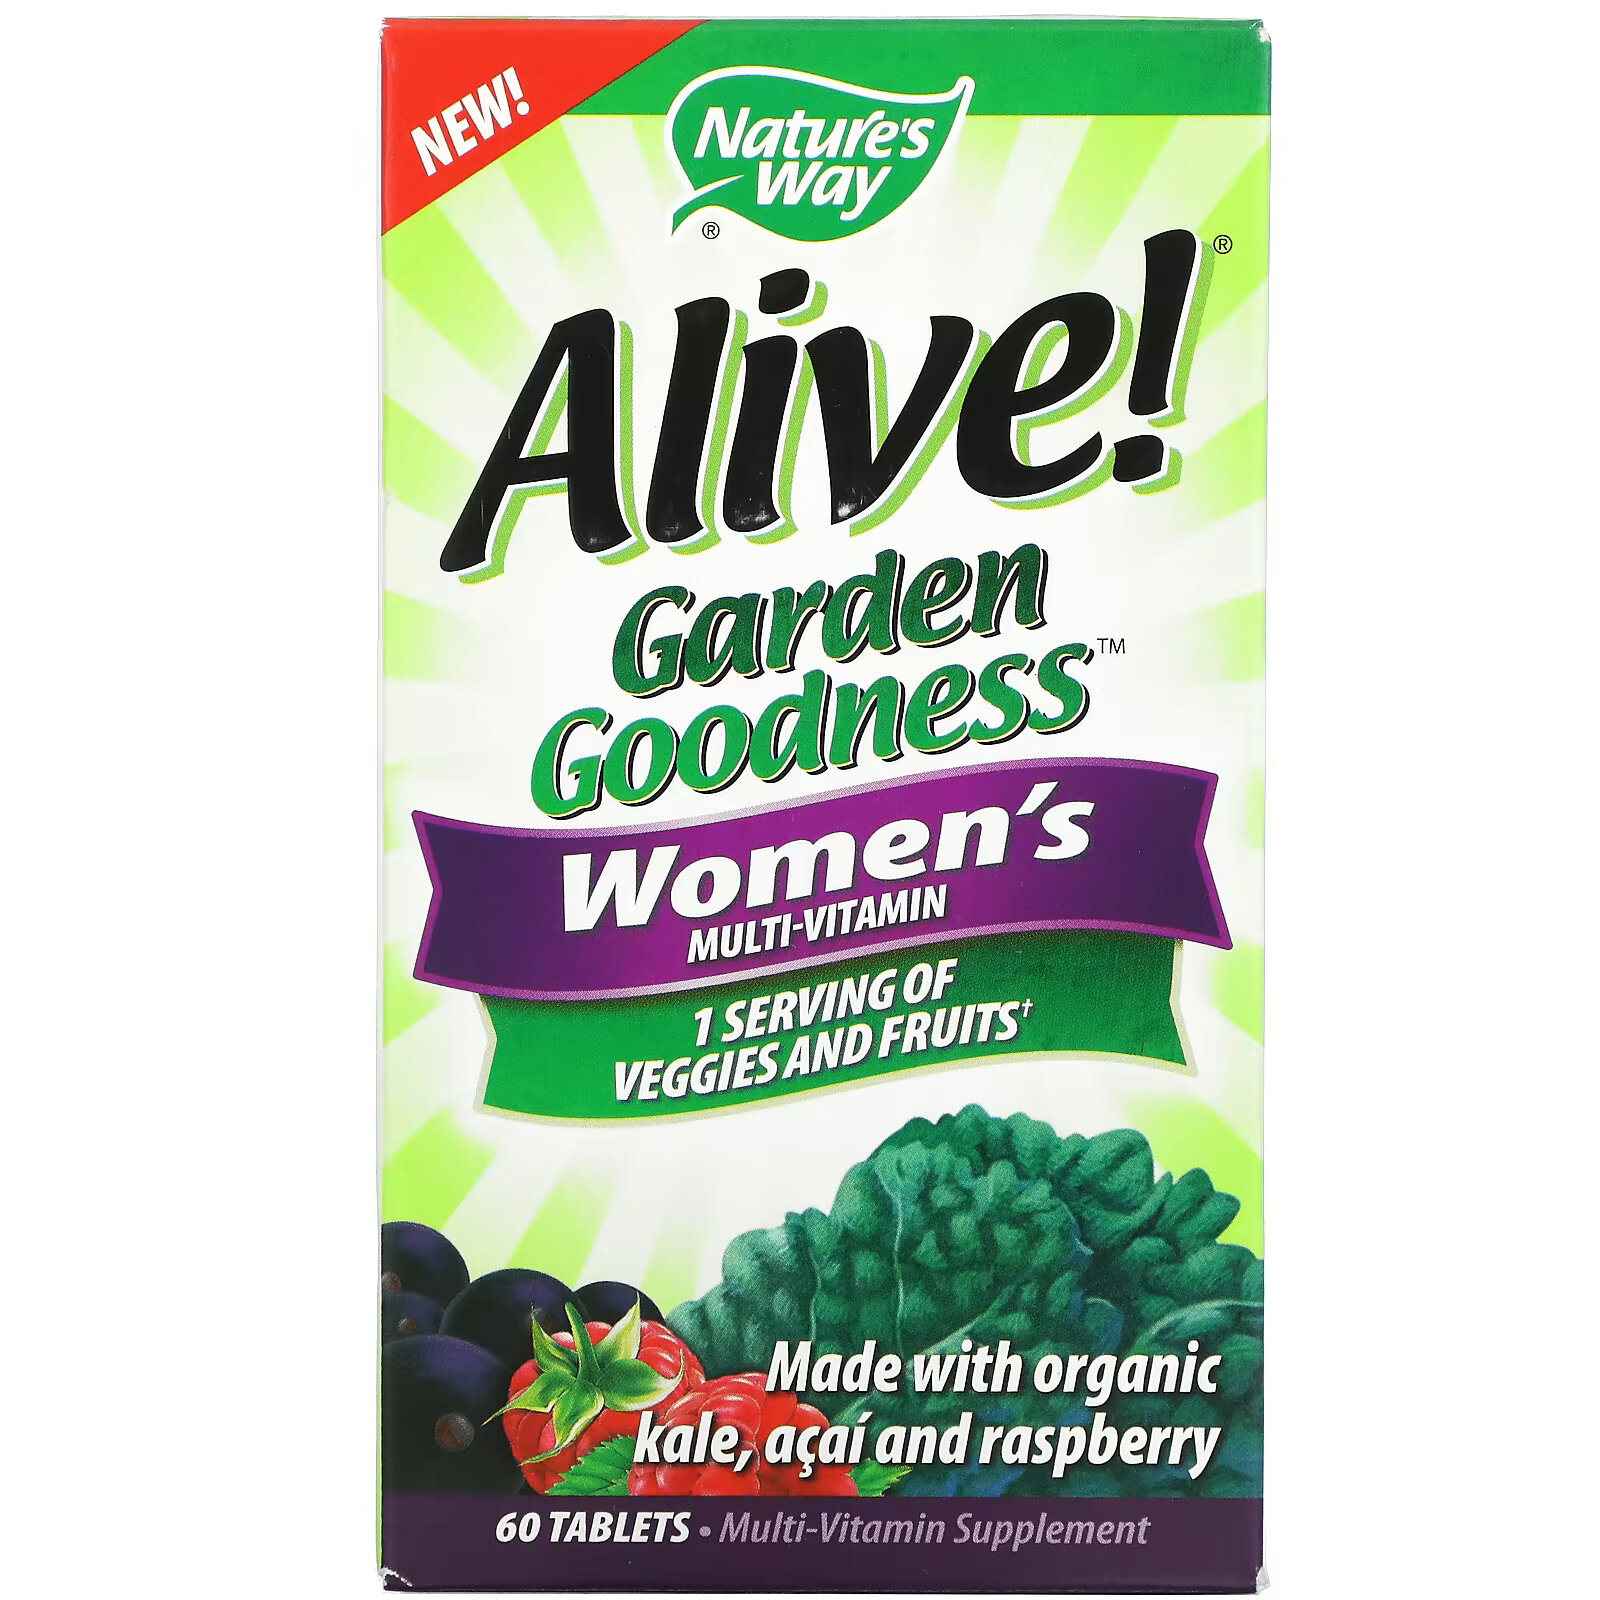 Мультивитамин Nature's Way Alive! Garden Goodness для женщин, 60 таблеток полноценный мультивитамин ultra potency 60 таблеток men s 50 nature s way